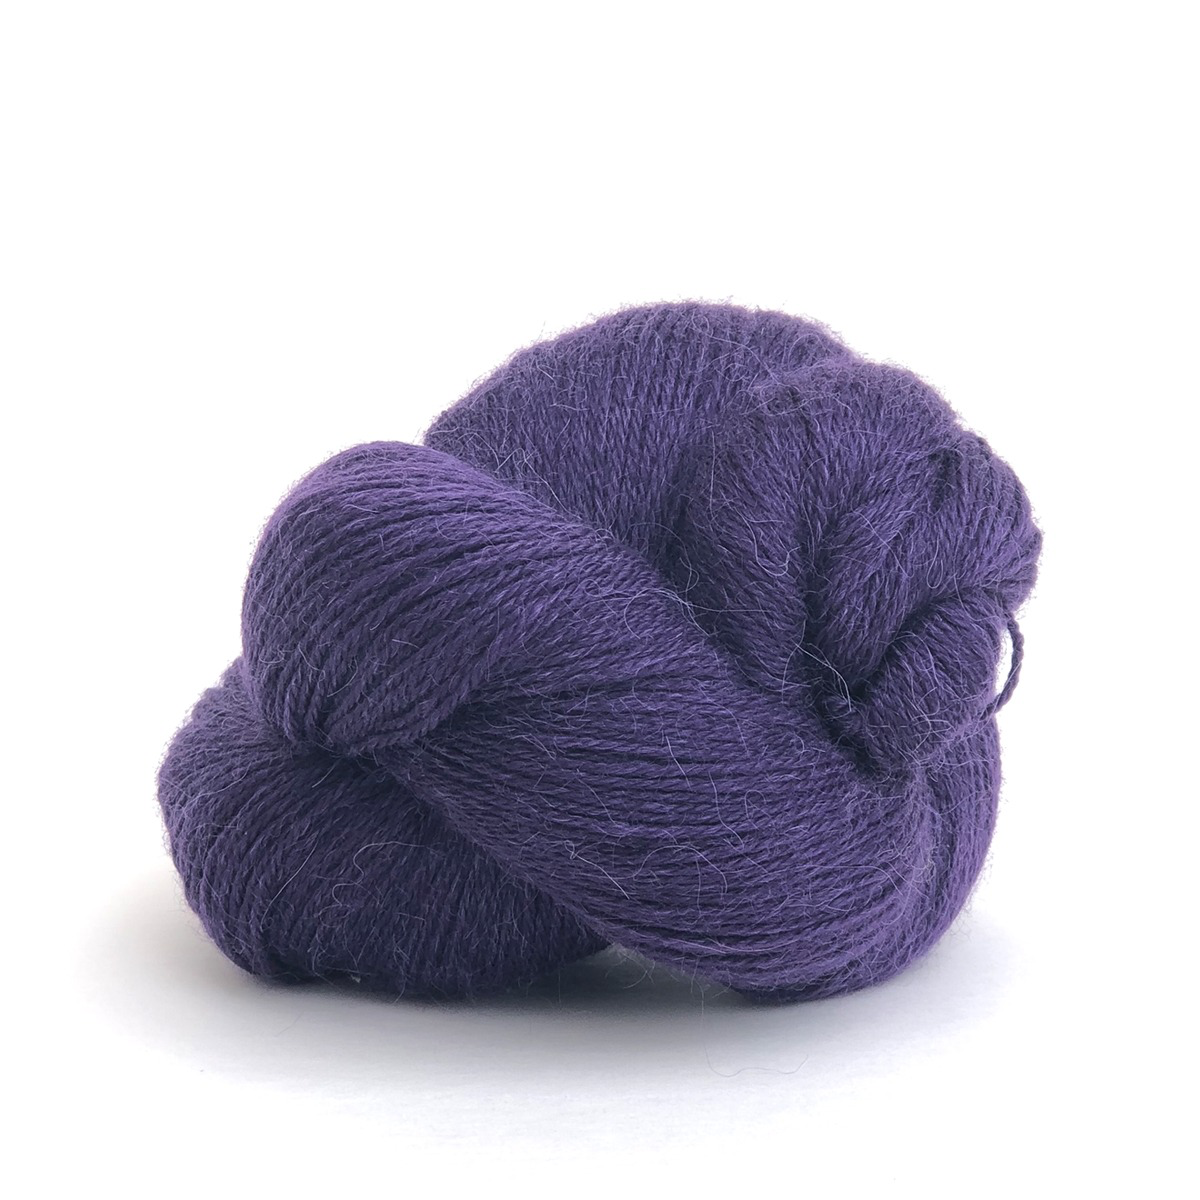 Kelbourne Woolens Yarn perennial purple